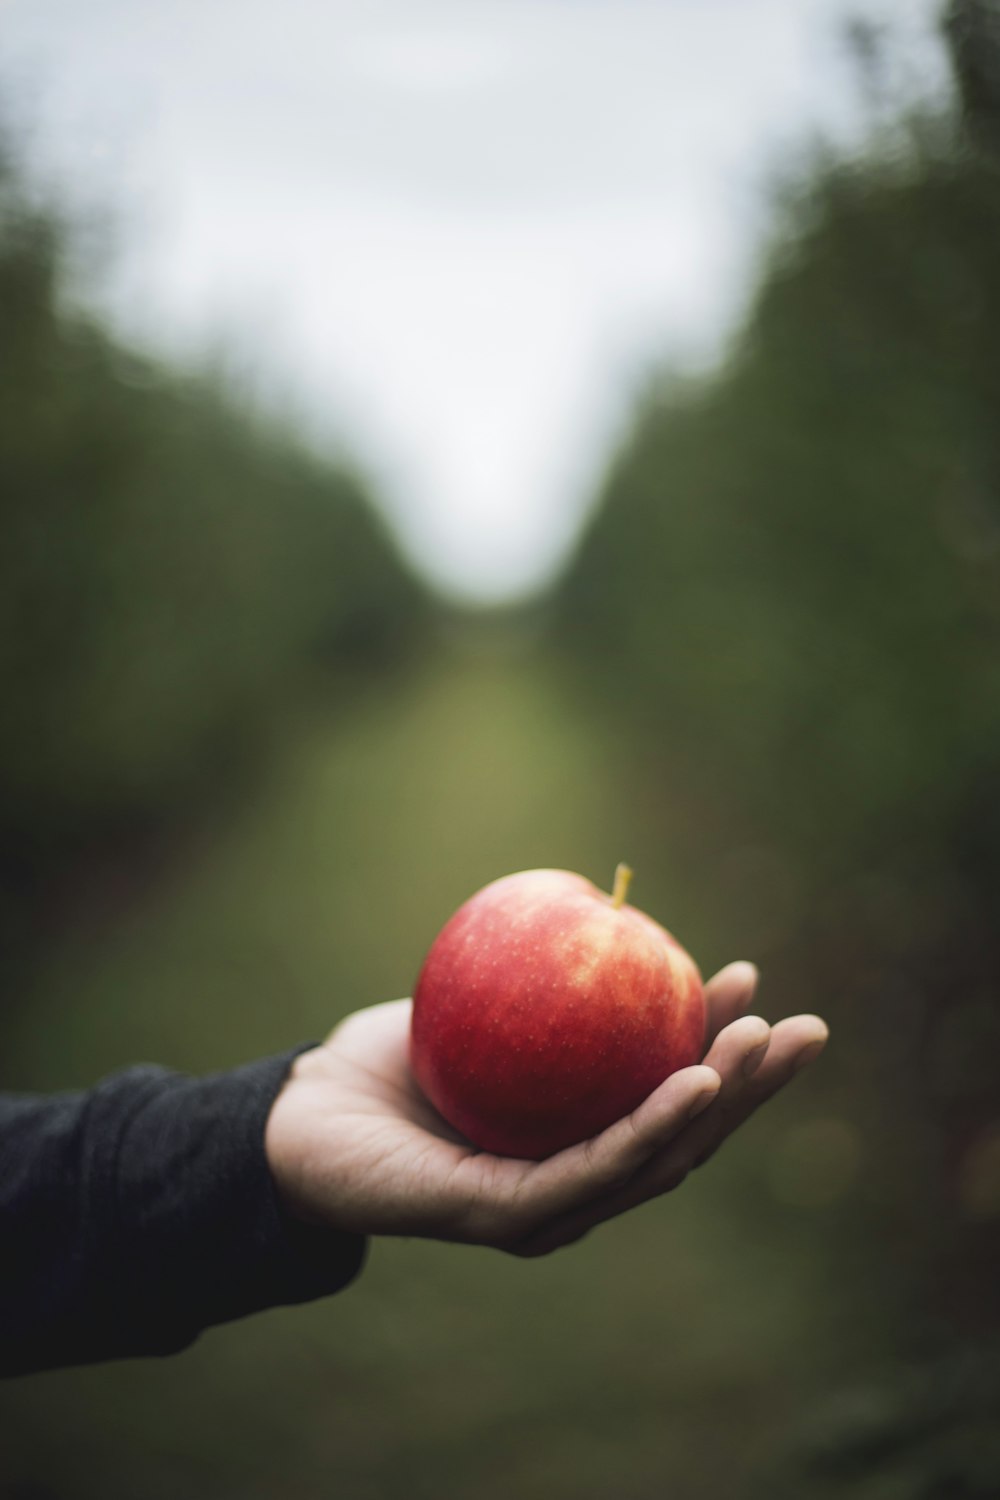 manzana en la mano de una persona